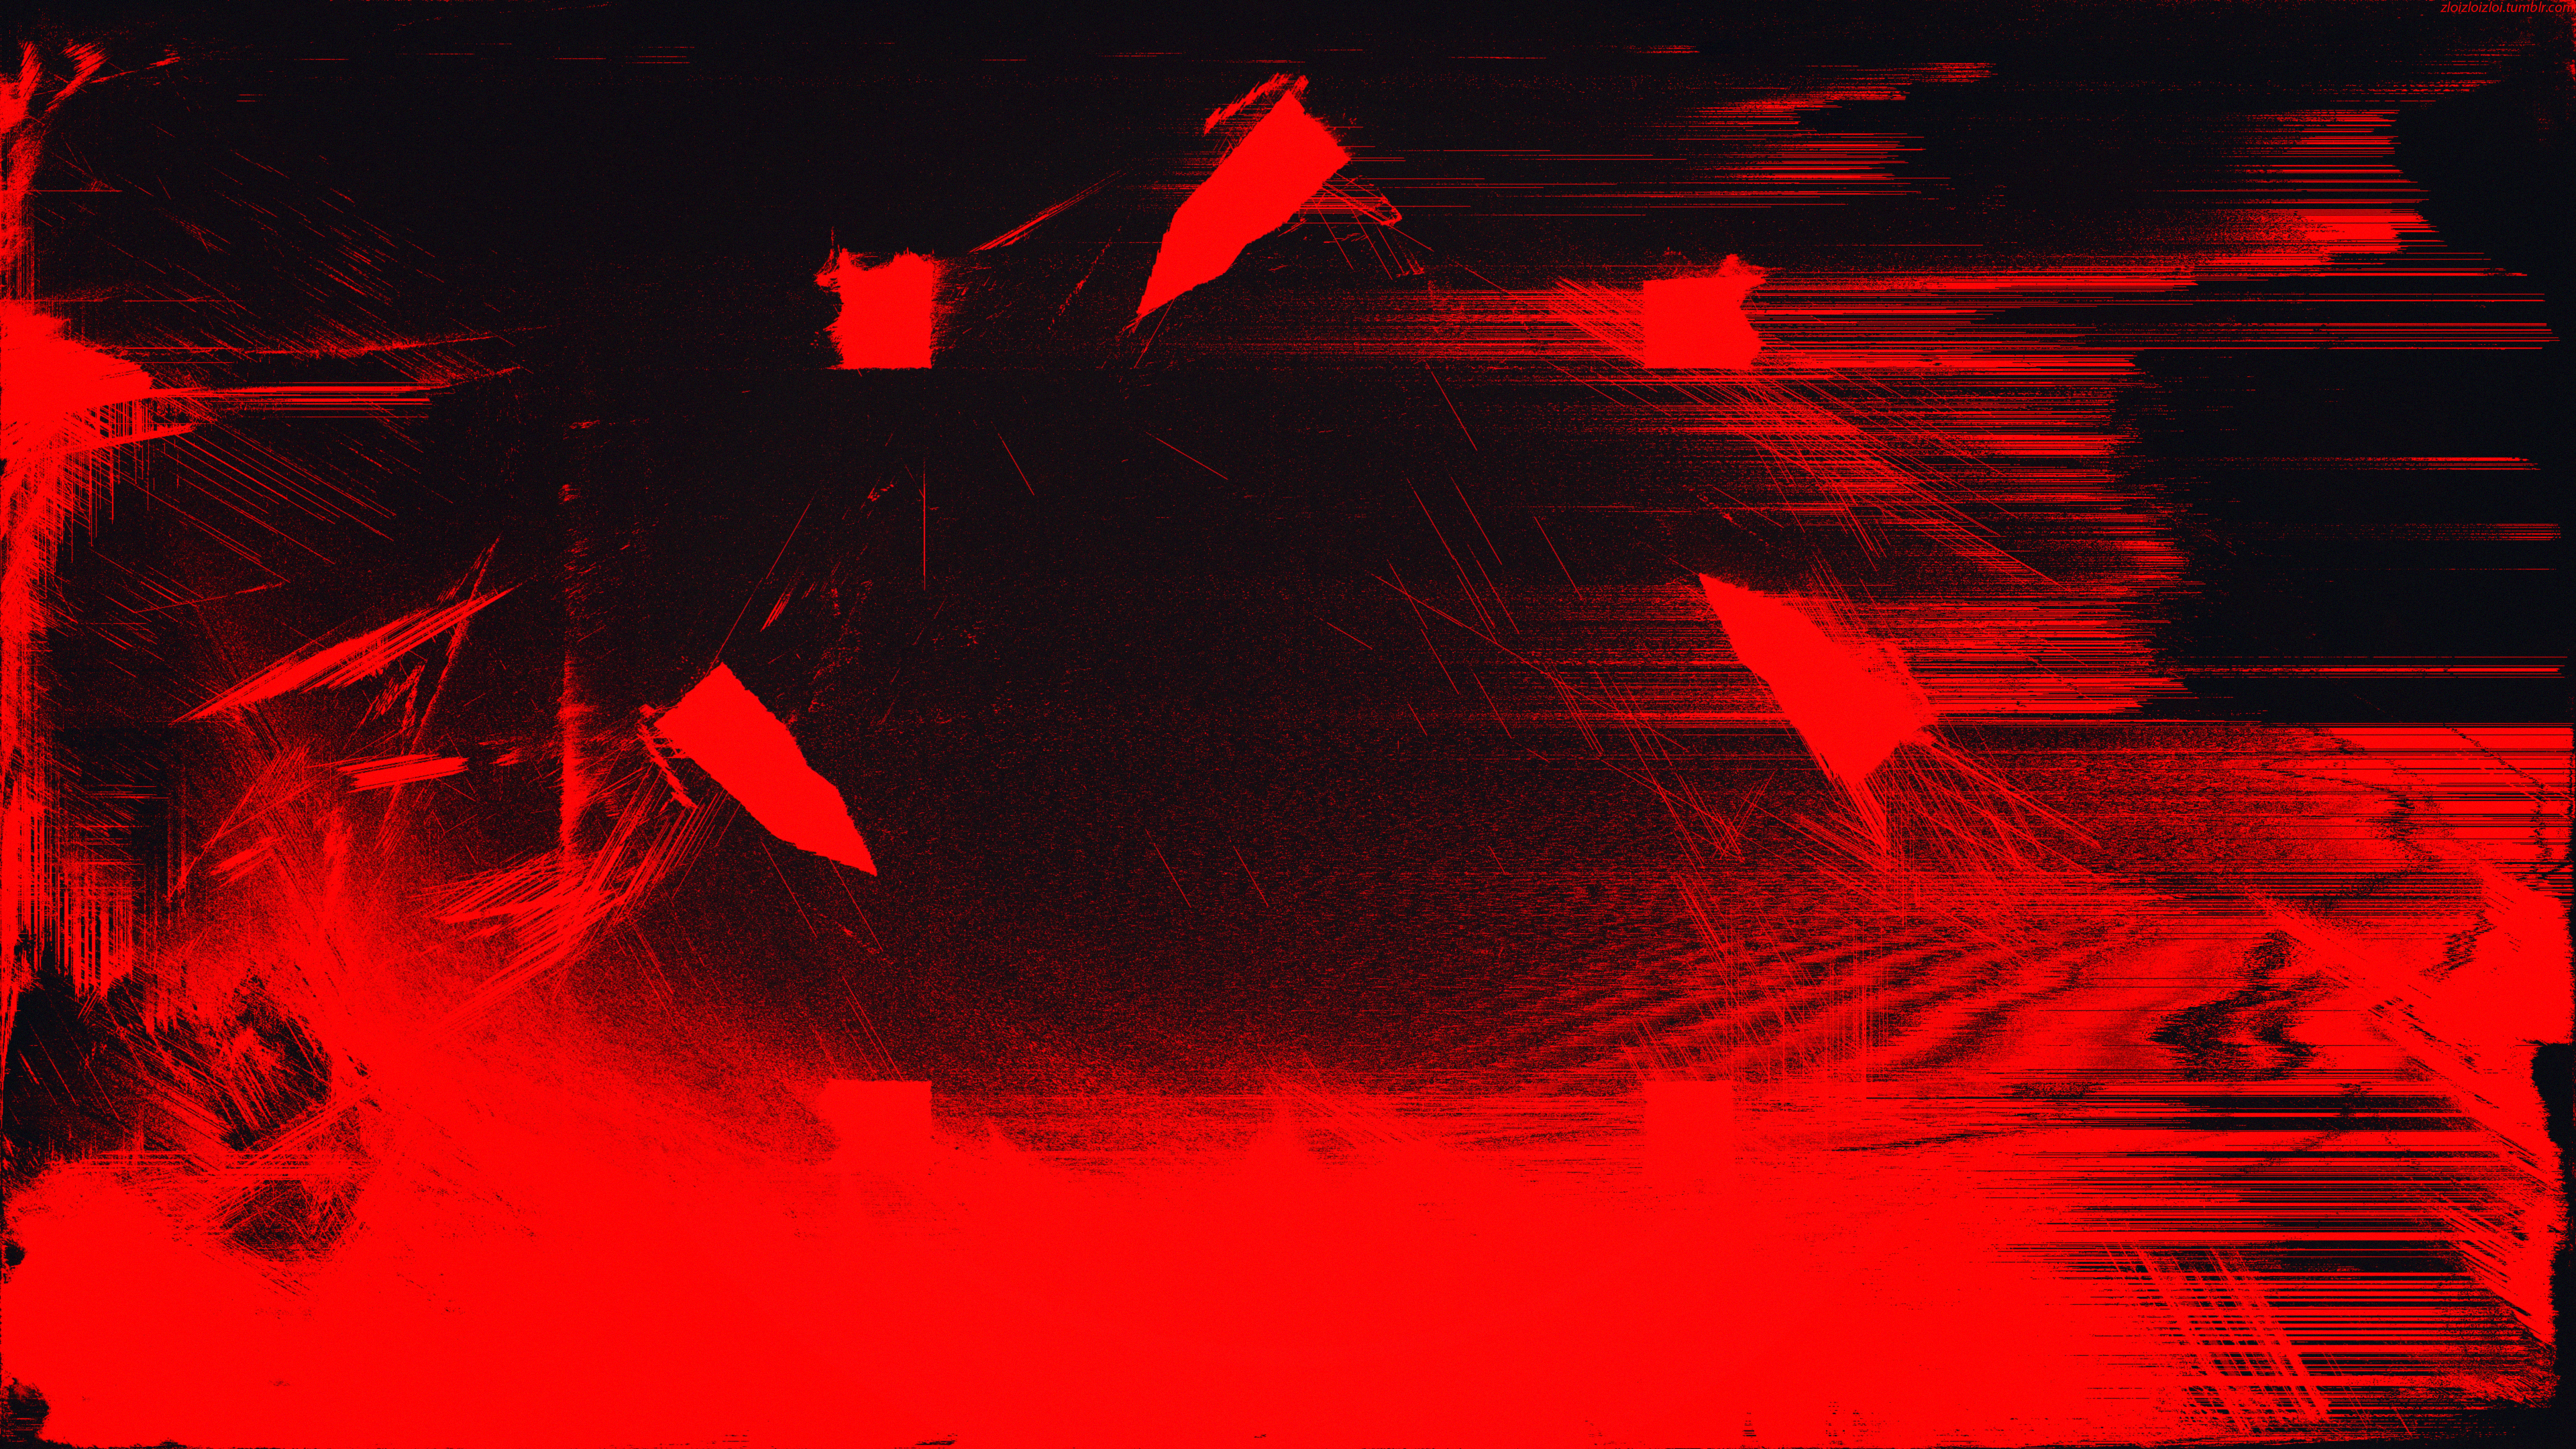 General 3840x2160 glitch art red abstract digital art minimalism